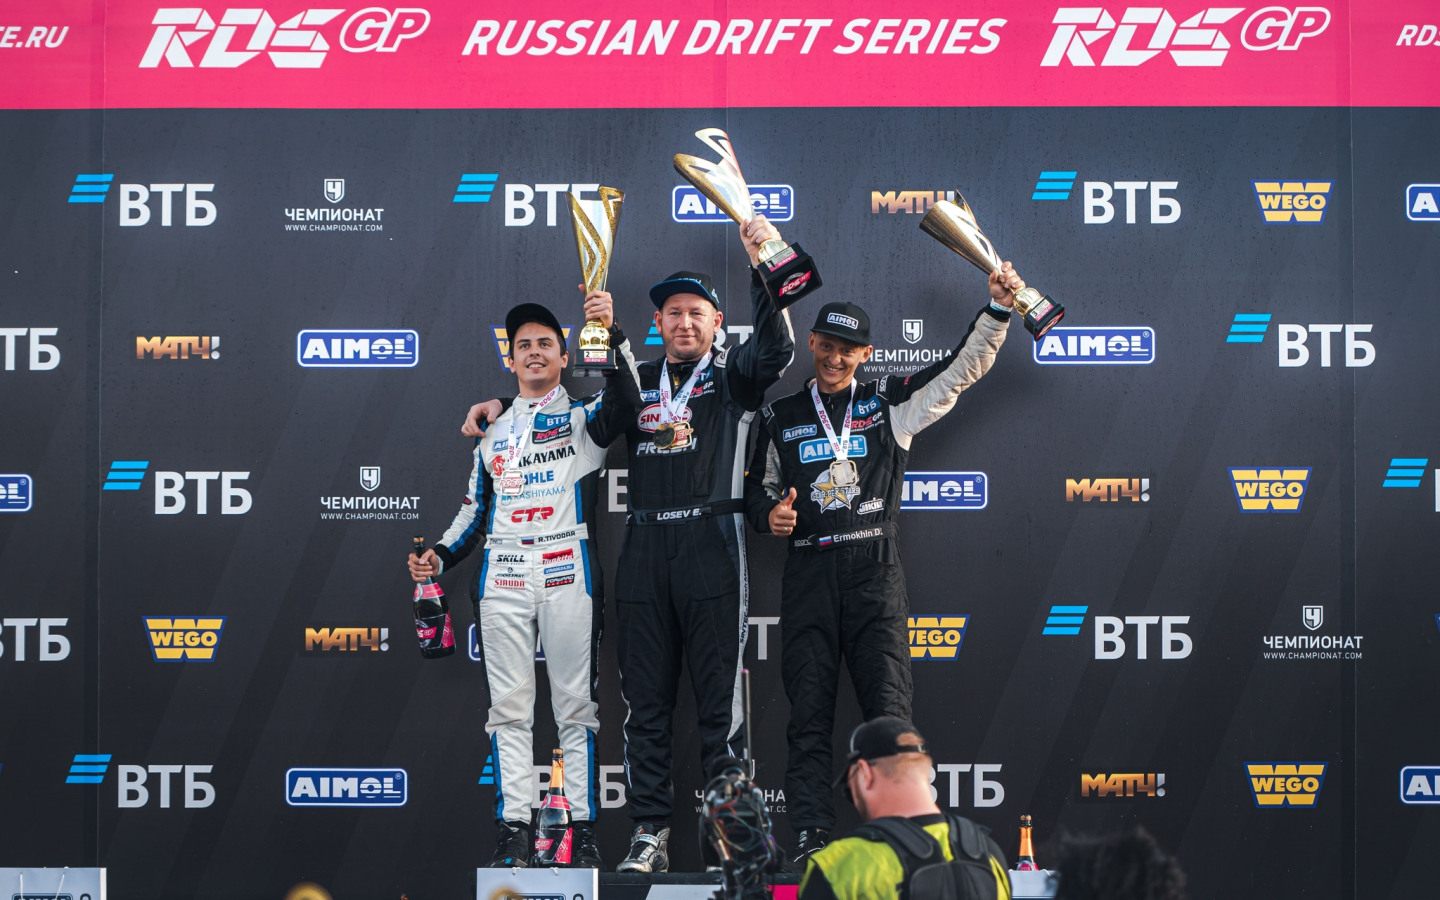 Лосев и Тиводар впервые в 2023 году на подиуме в RDS GP, а для Ермохина это уже второй подряд призовой этап © RDS GP